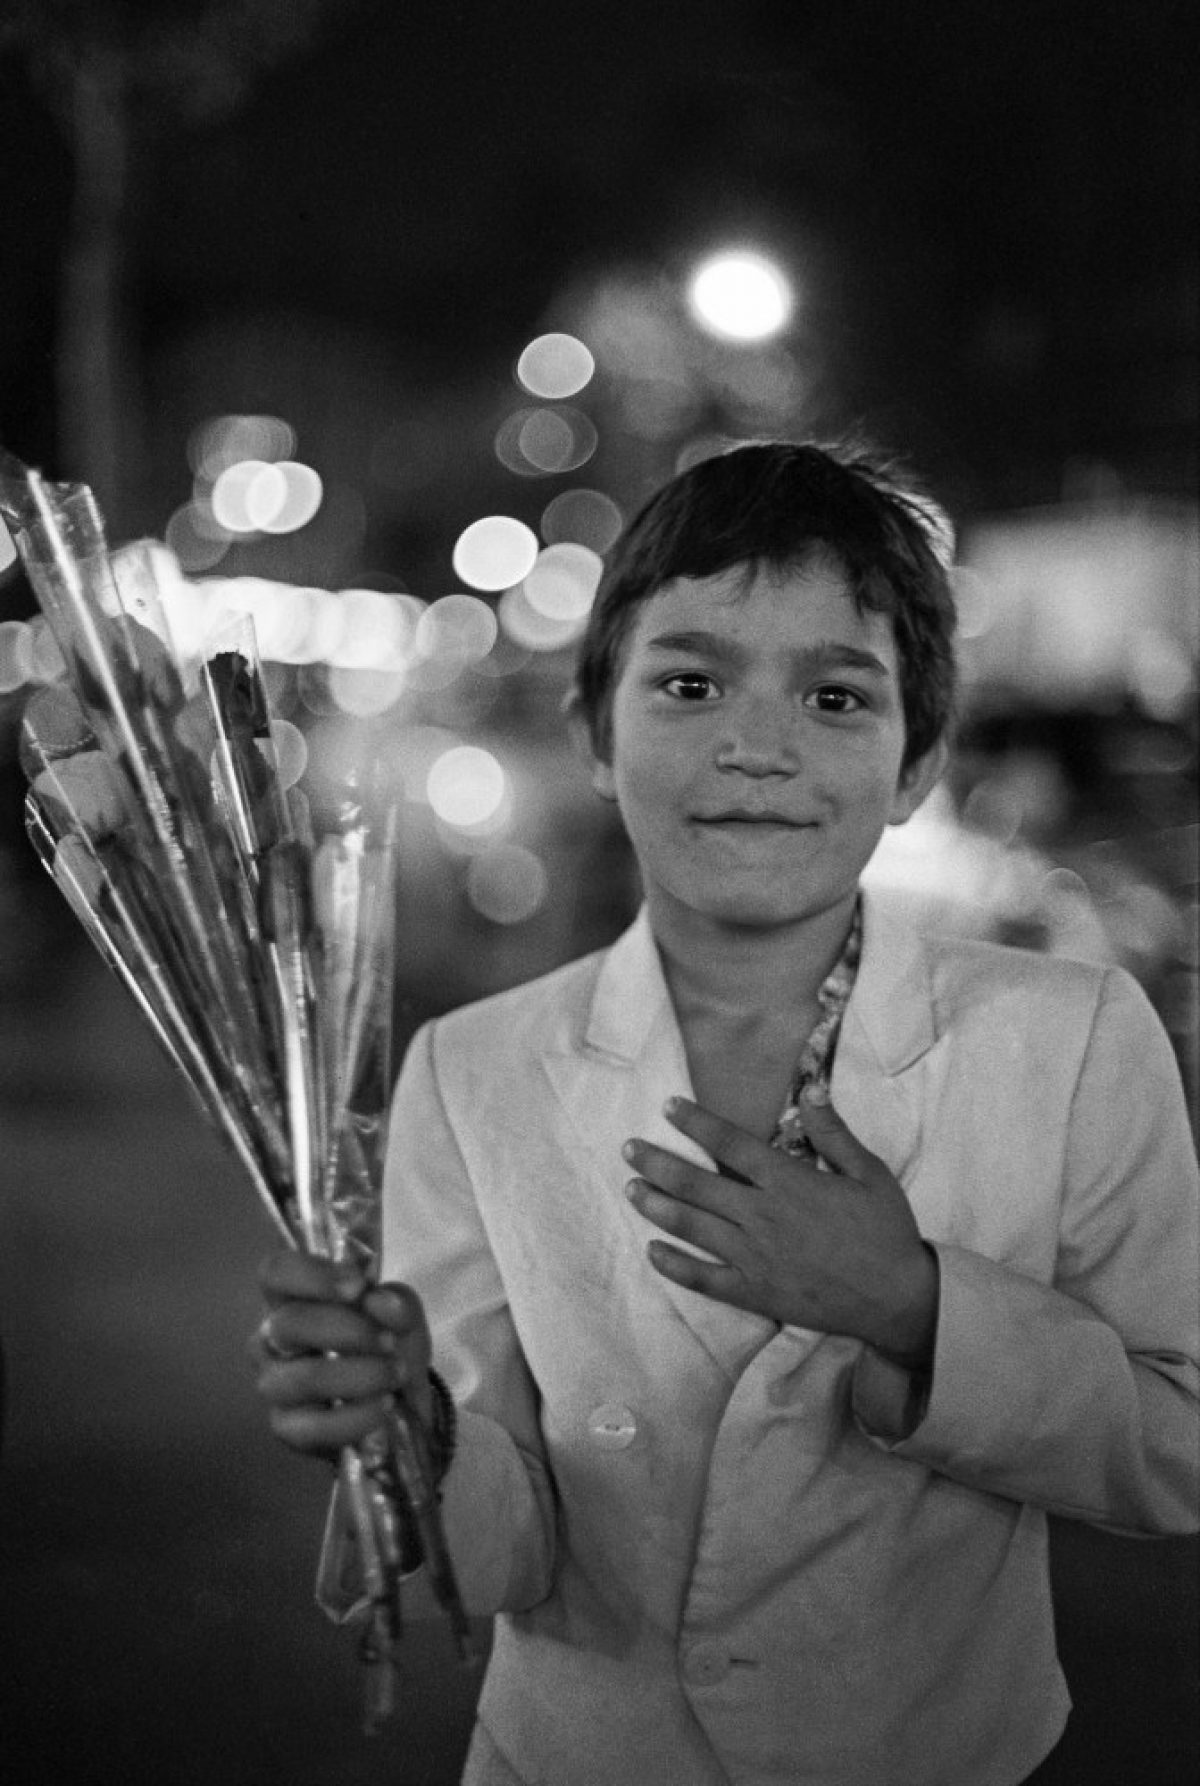 Pariisilainen poika kauppaa kukkia vuonna 1988. Kuva: Timo Kirves / Journalistinen kuva-arkisto JOKA